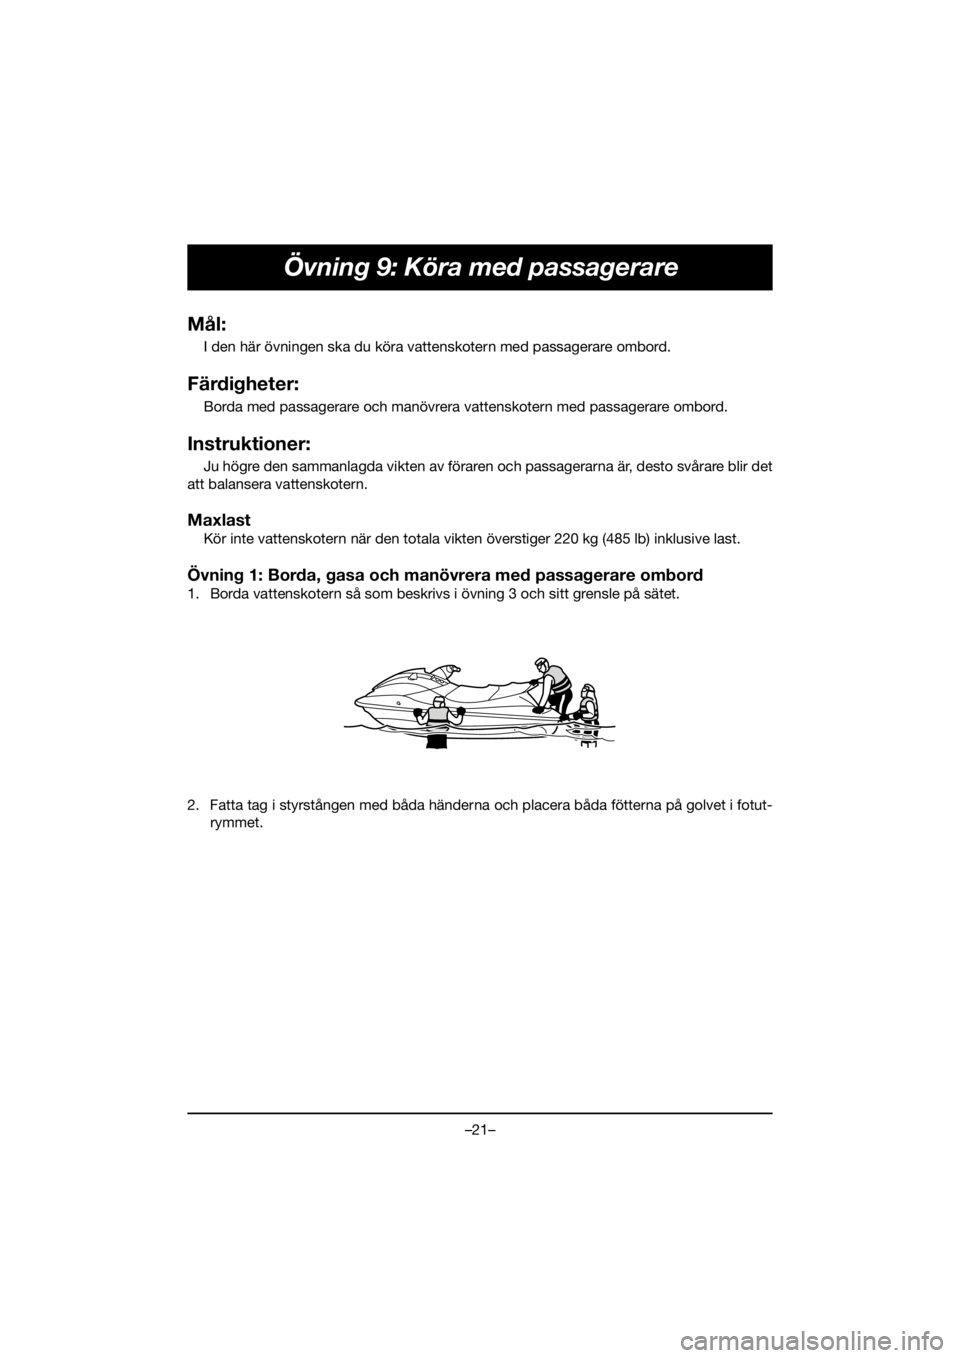 YAMAHA EXR 2020  Owners Manual –21–
Övning 9: Köra med passagerare
Mål:
I den här övningen ska du köra vattenskotern med passagerare ombord.
Färdigheter:
Borda med passagerare och manövrera vattenskotern med passagerare